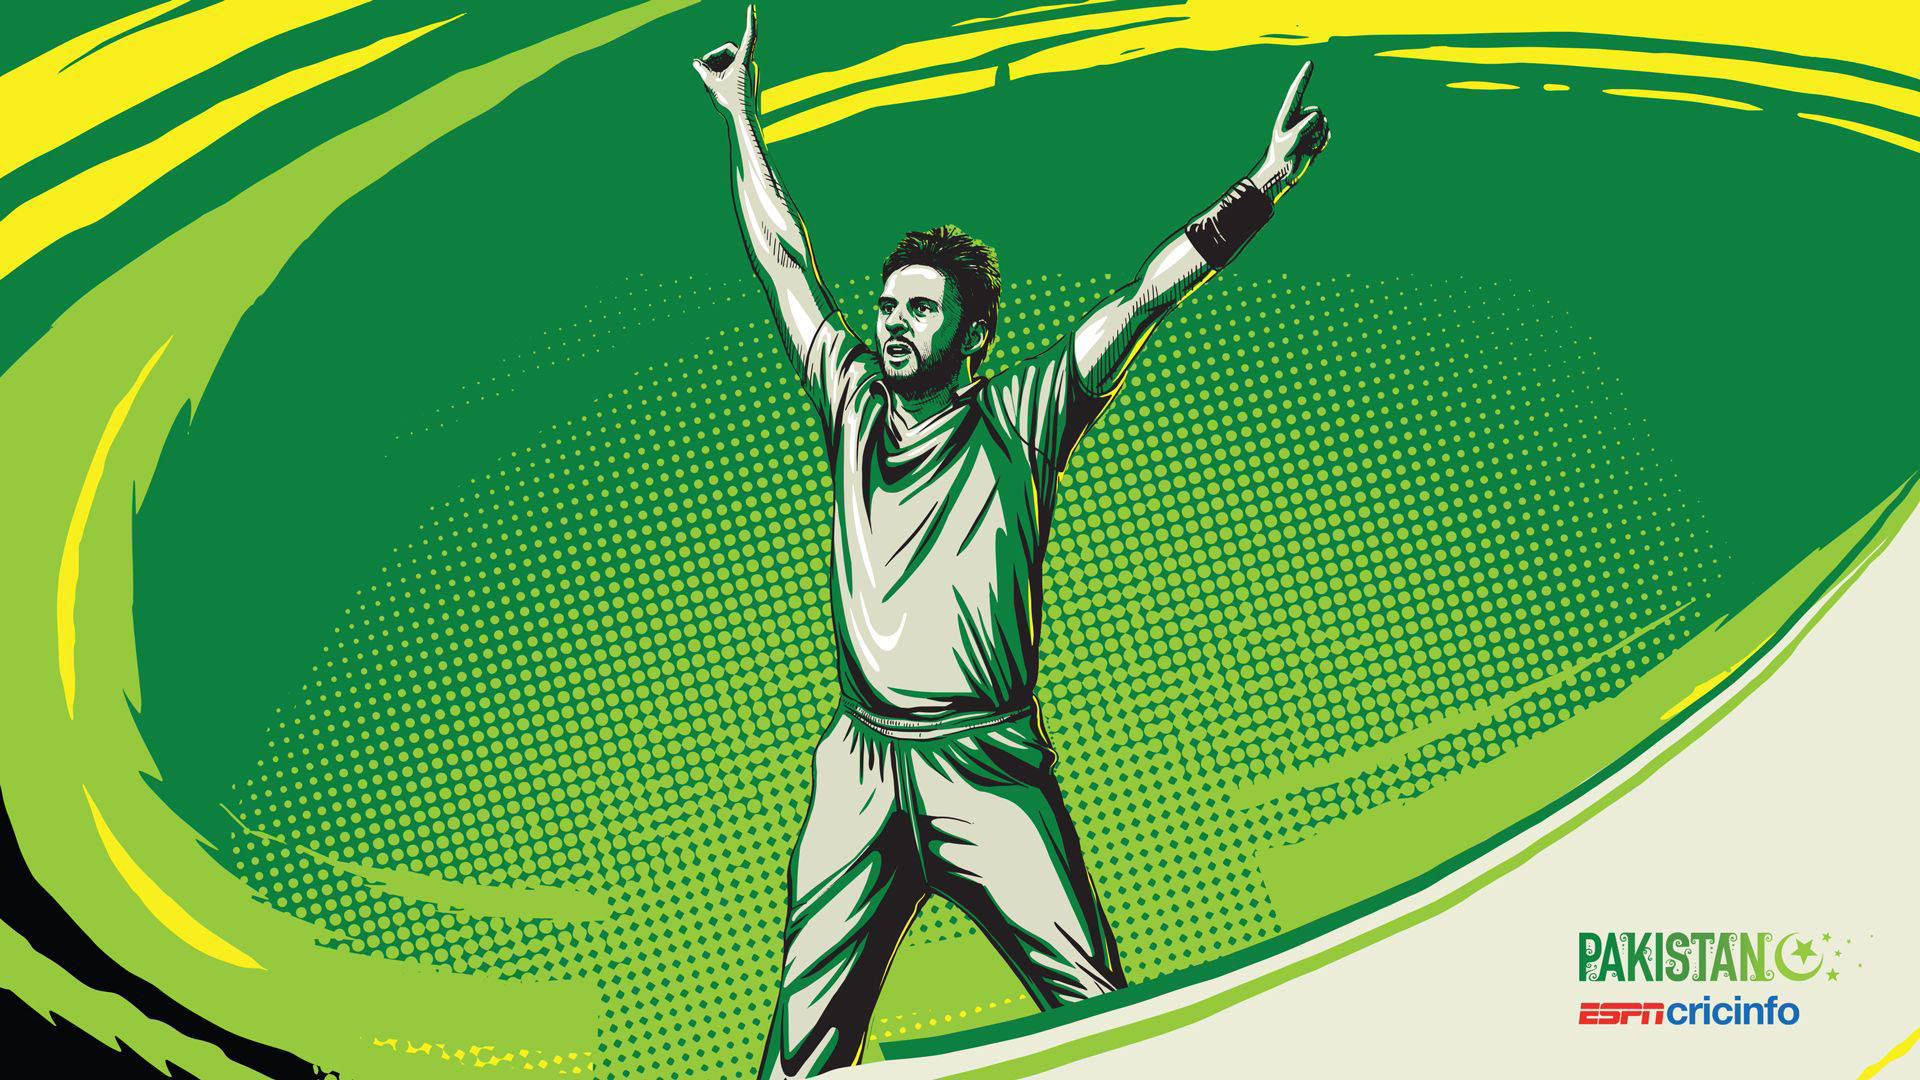 Pakistan Cricket Afridi Halvton Design Wallpaper